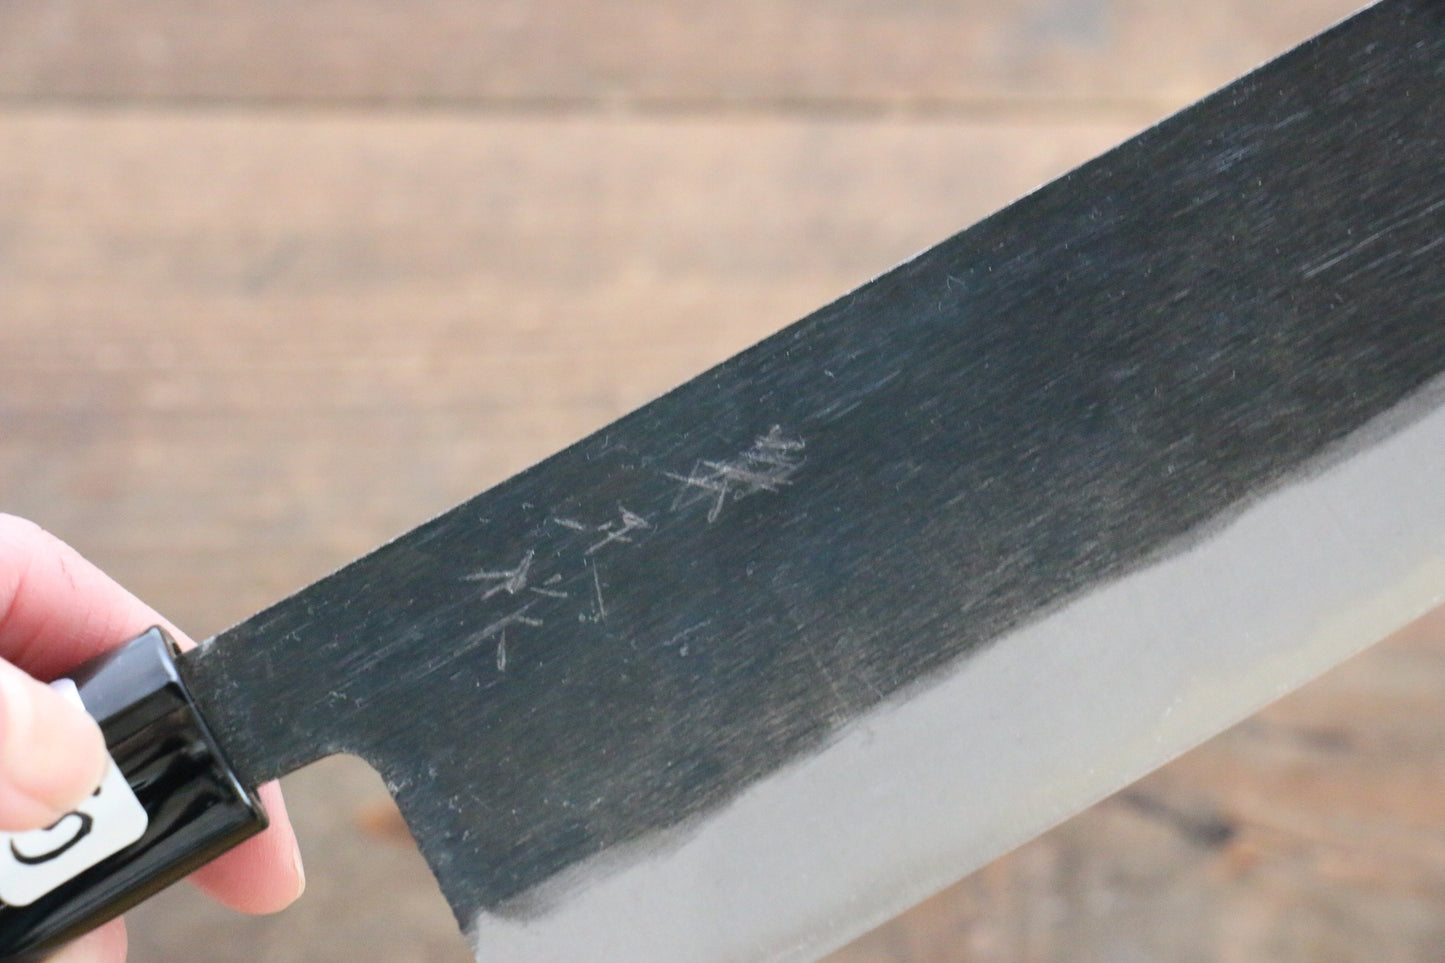 Kanetsune Blue Steel No.2 Kurouchi Nakiri Japanese Knife 165mm with Magnolia Handle - Japanny - Best Japanese Knife